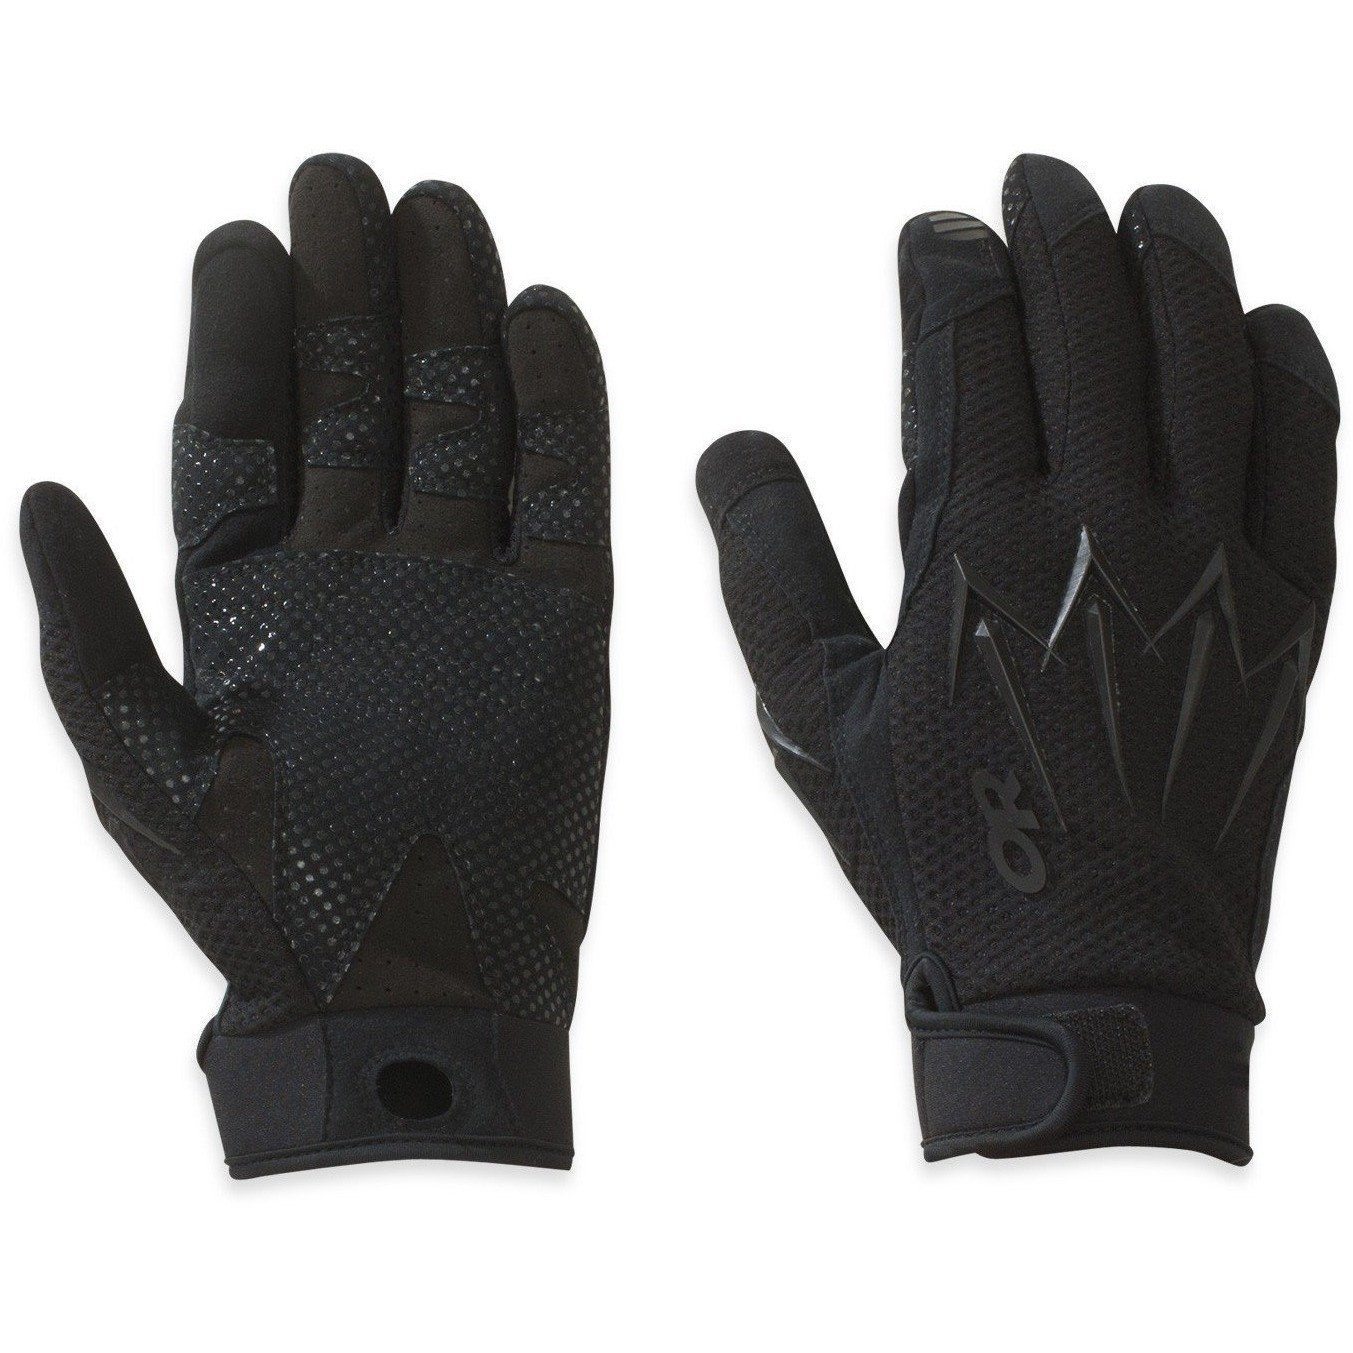 Outdoor Research Halberd Sensor Gloves - All Black / Medium